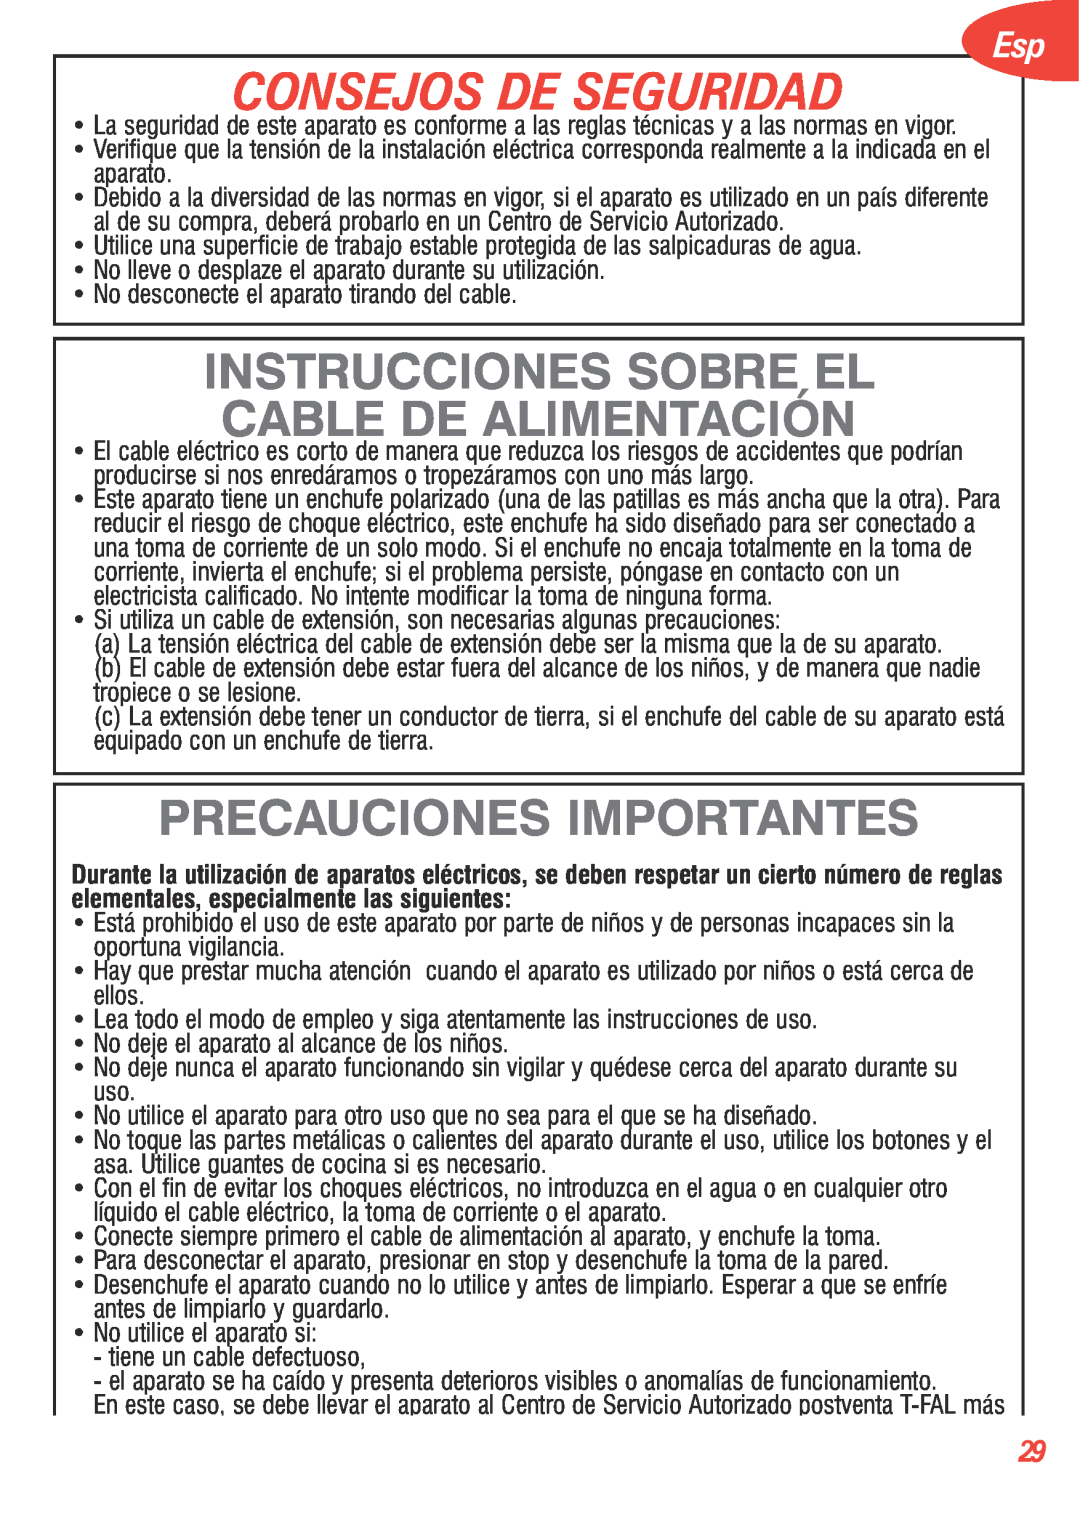 T-Fal 5252 manual Consejos De Seguridad, Instrucciones Sobre El Cable De Alimentación, Precauciones Importantes 